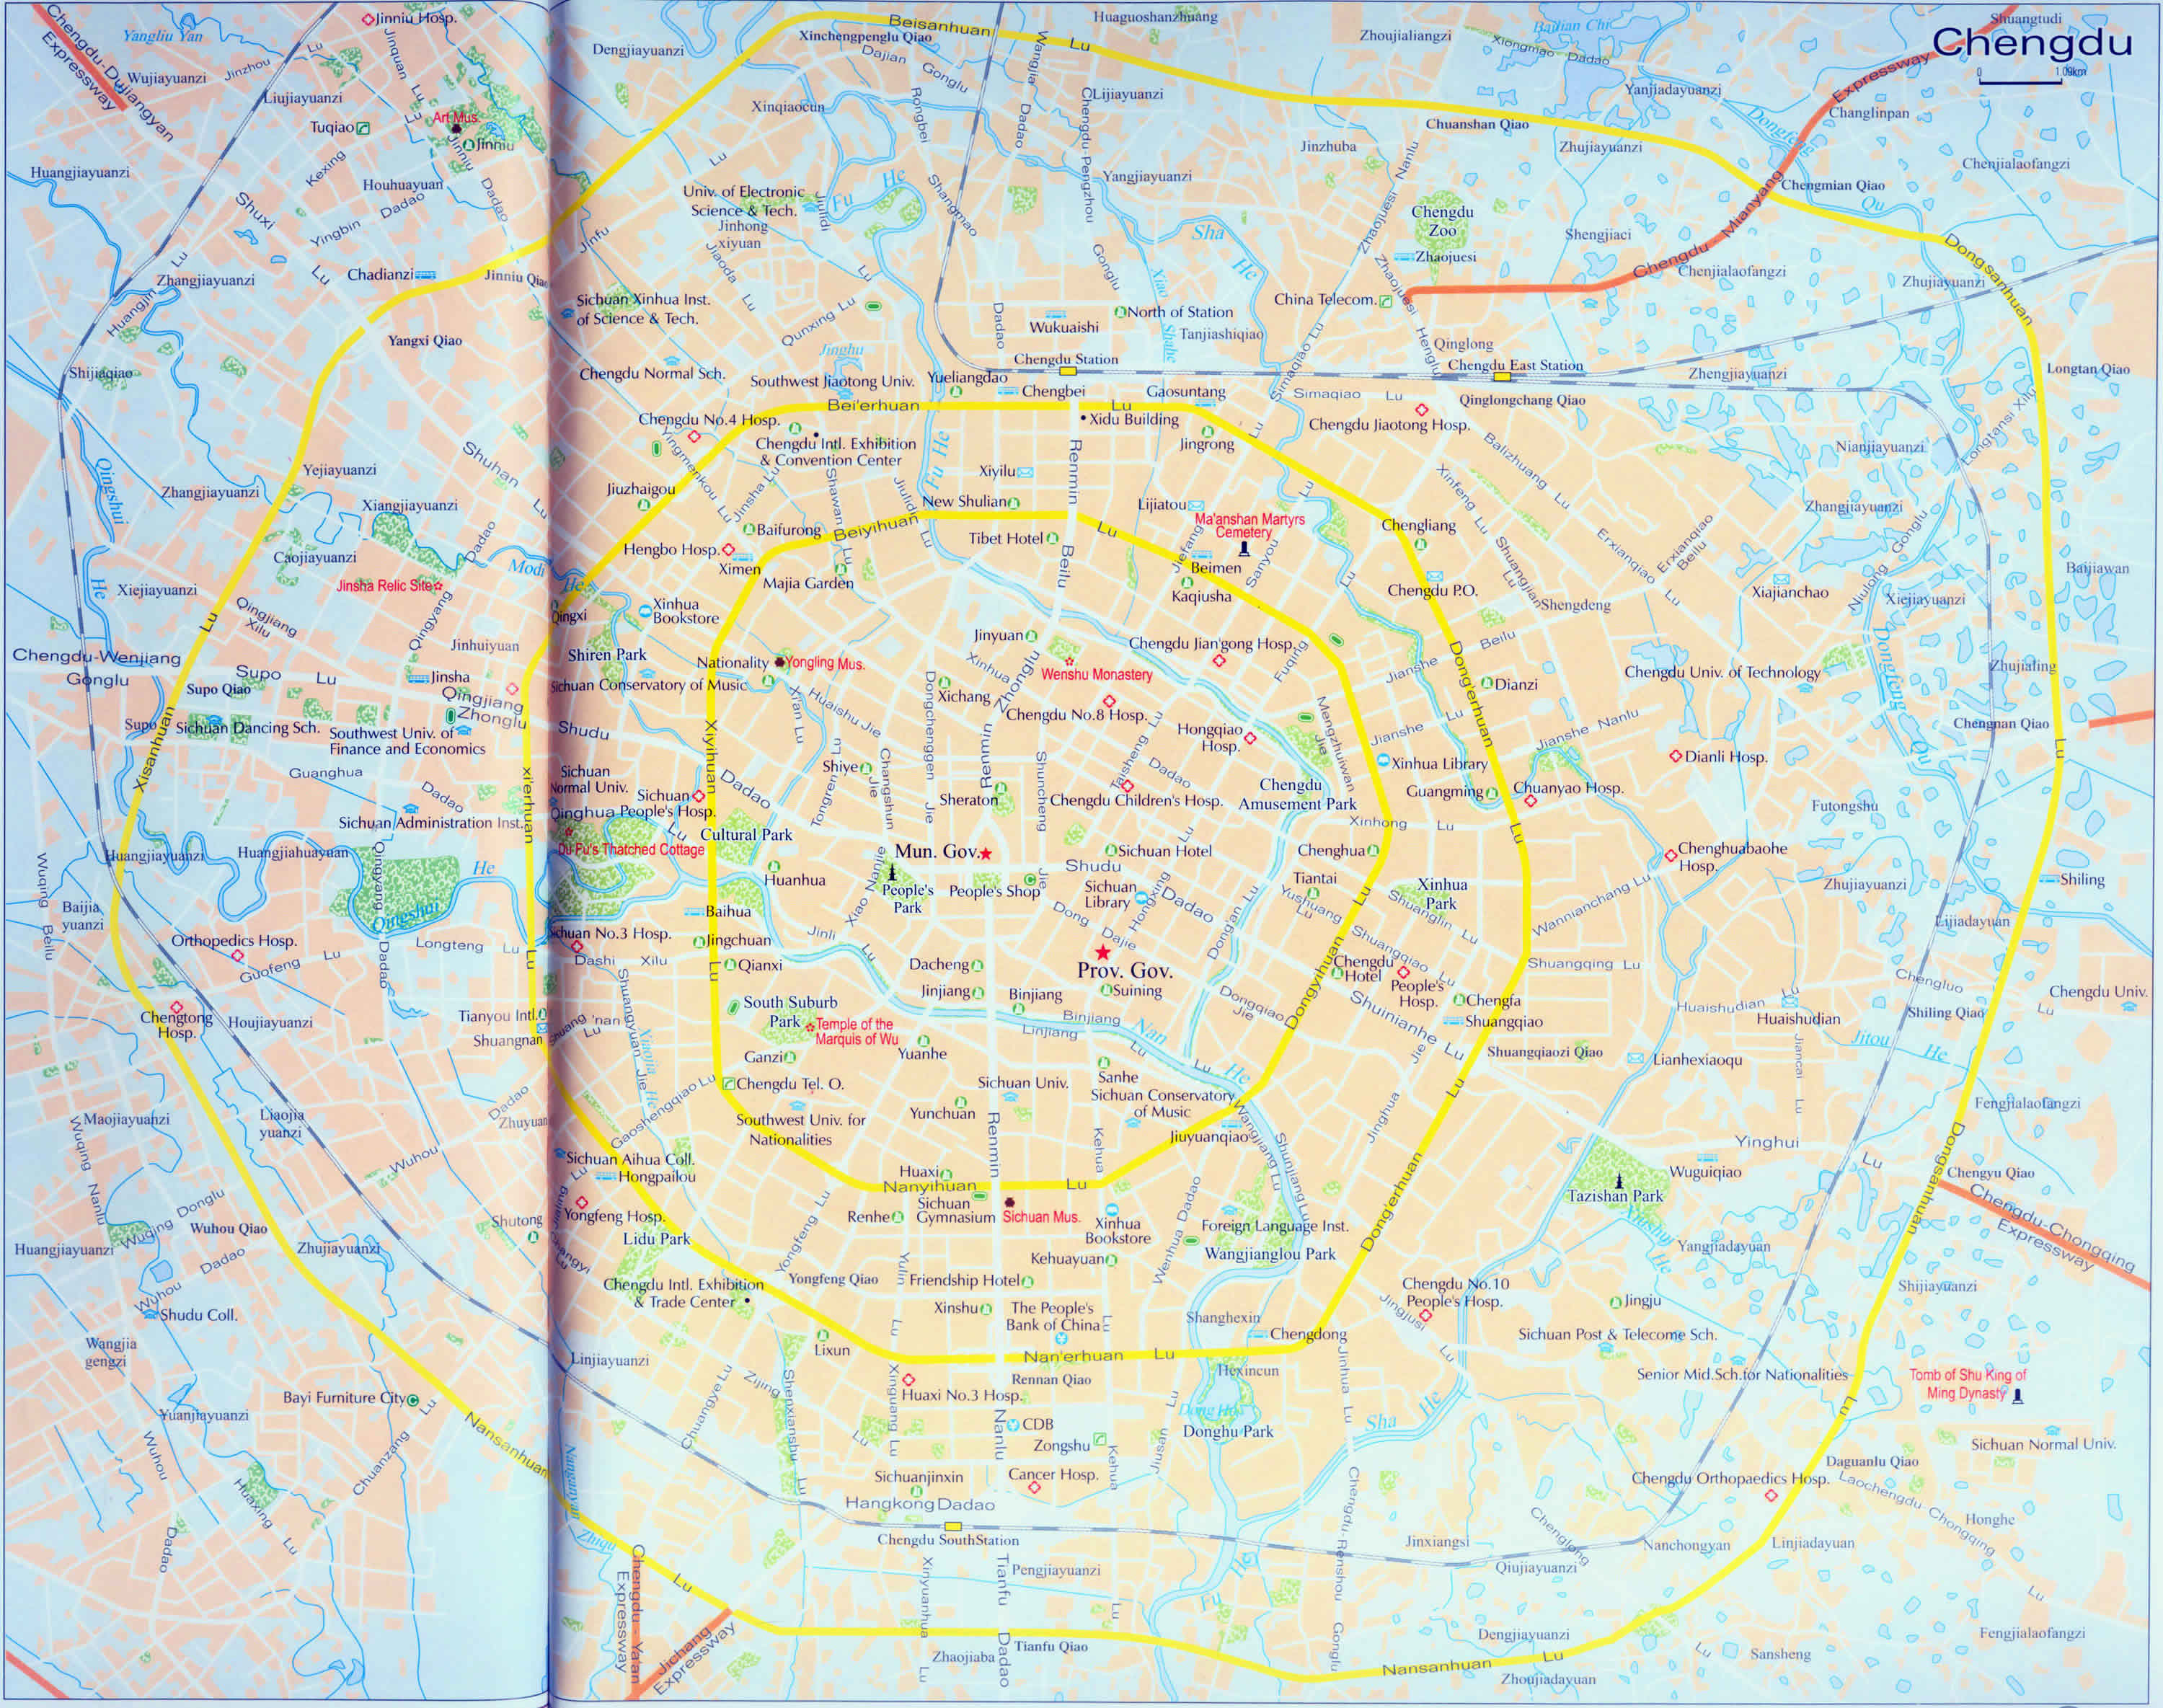 Chengdu city map